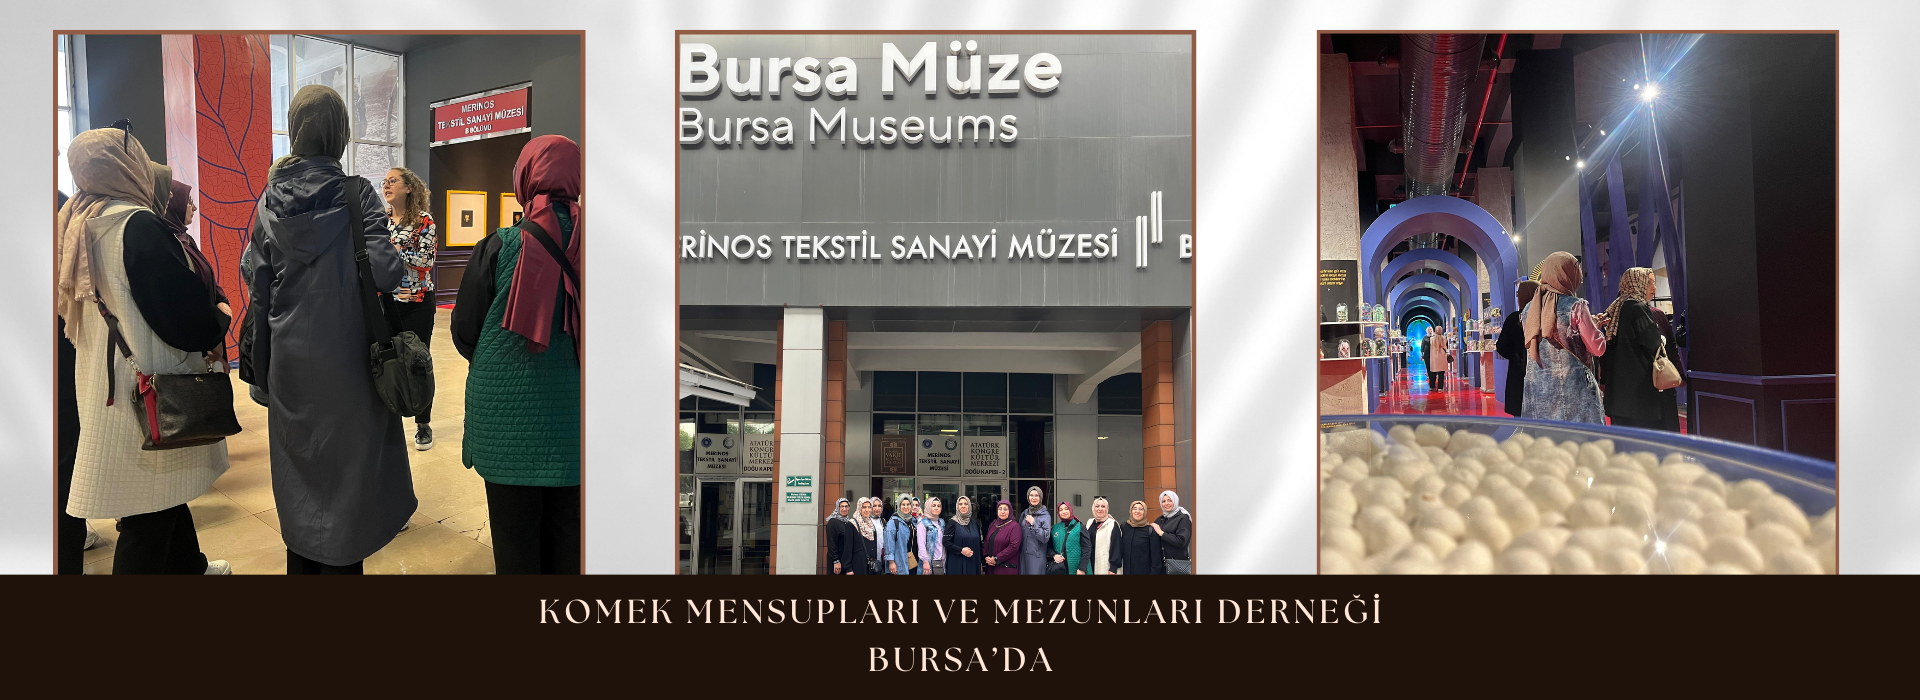 KOMEK Mensupları ve Mezunları Derneği Bursa'da